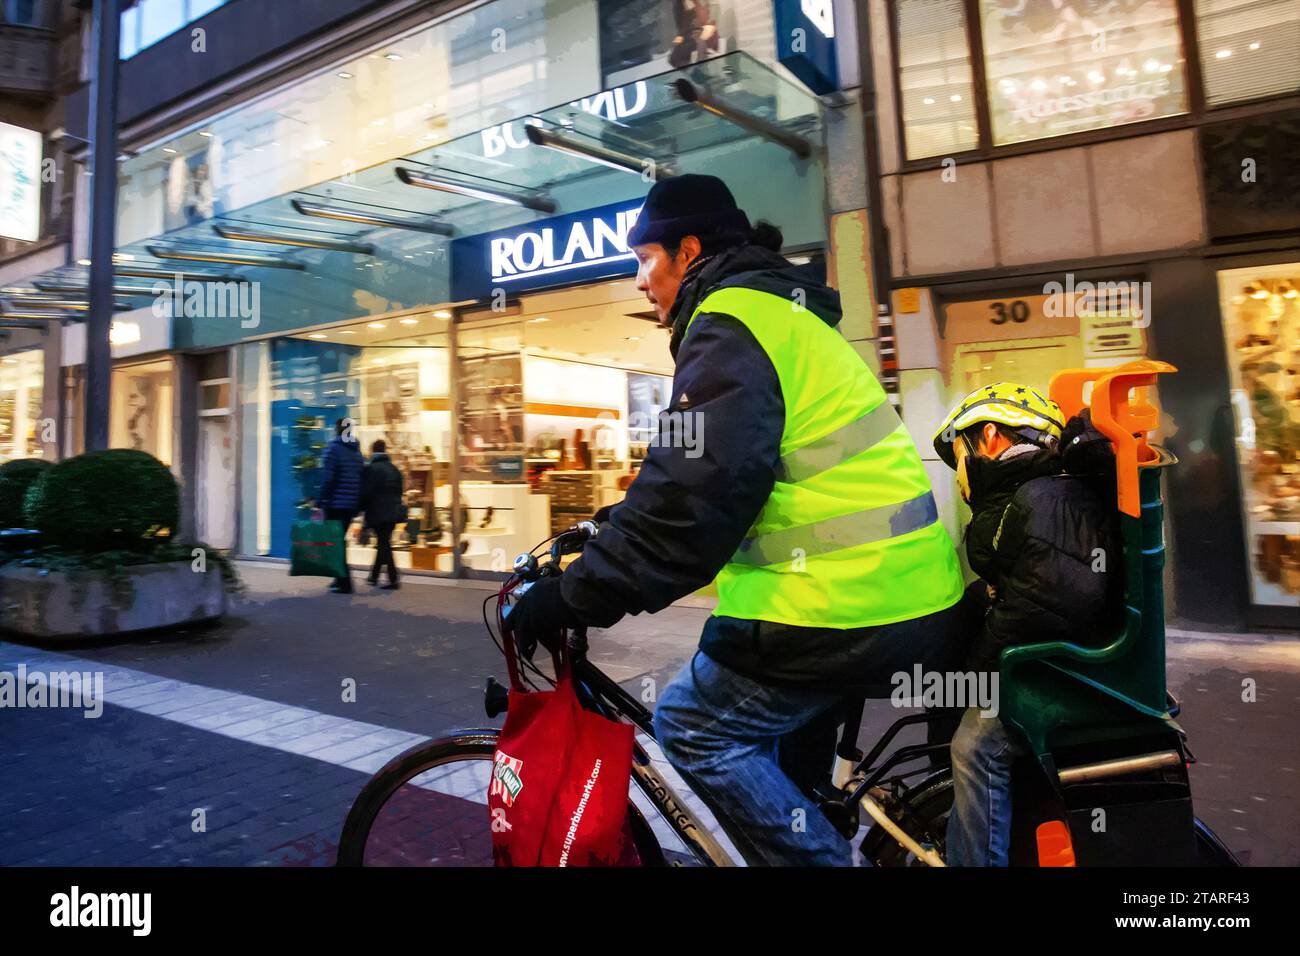 11-25-2015 Düsseldorf GERMEN Hombre joven en traje amarillo brillante que se mueve en bicicleta con el hijo en una silla especial - de la etnia de Asia oriental Foto de stock